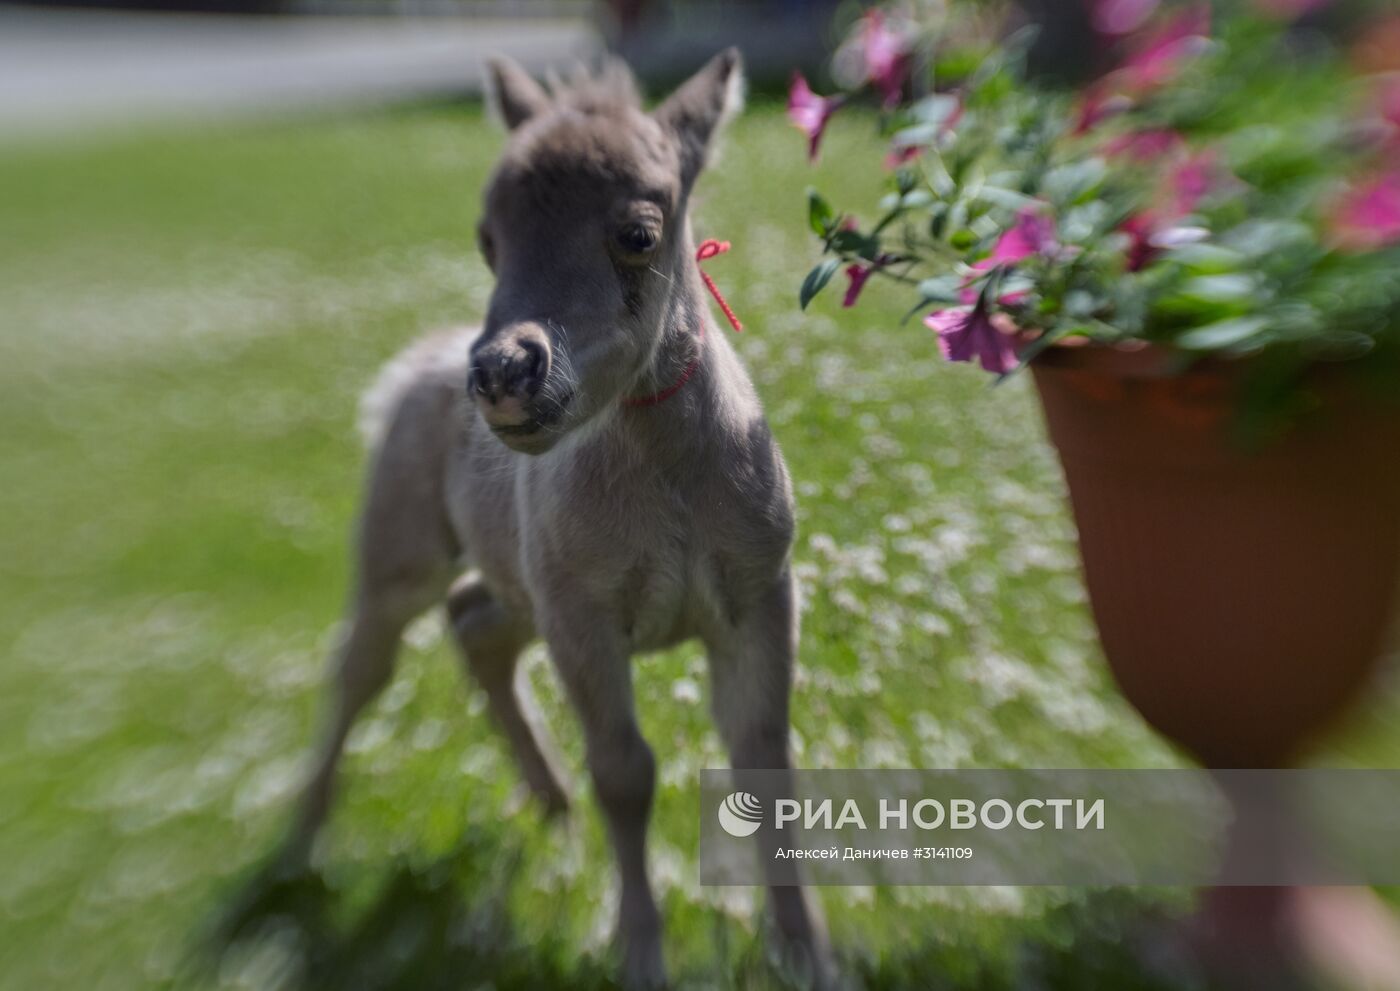 Самый маленький жеребенок в мире родился в Ленинградской области